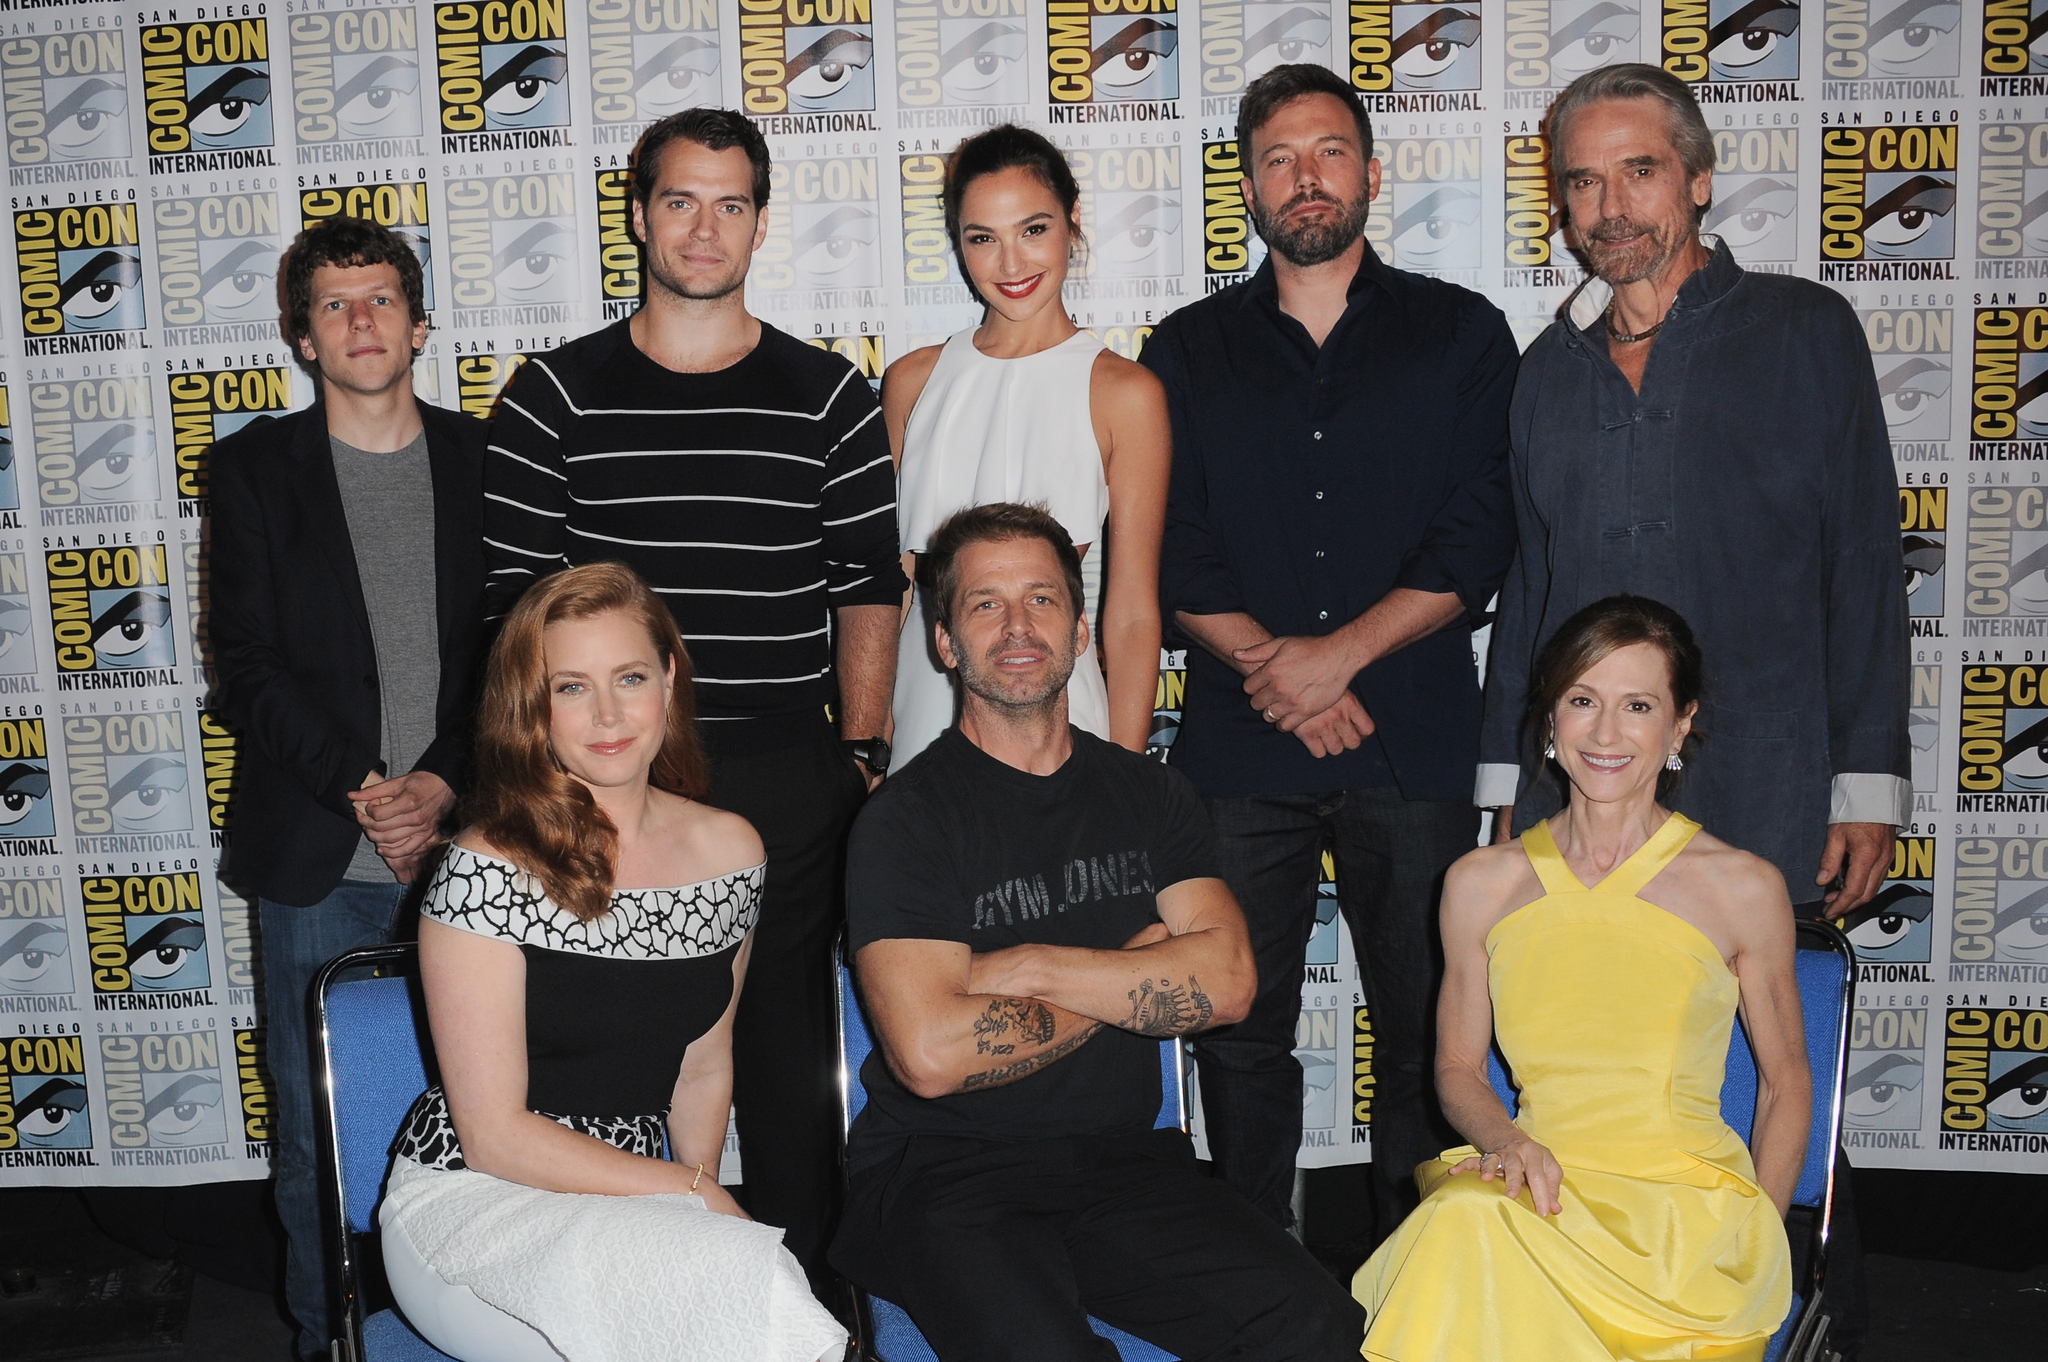 Ben Affleck, Holly Hunter, Jeremy Irons, Amy Adams, Henry Cavill, Jesse Eisenberg, Zack Snyder and Gal Gadot